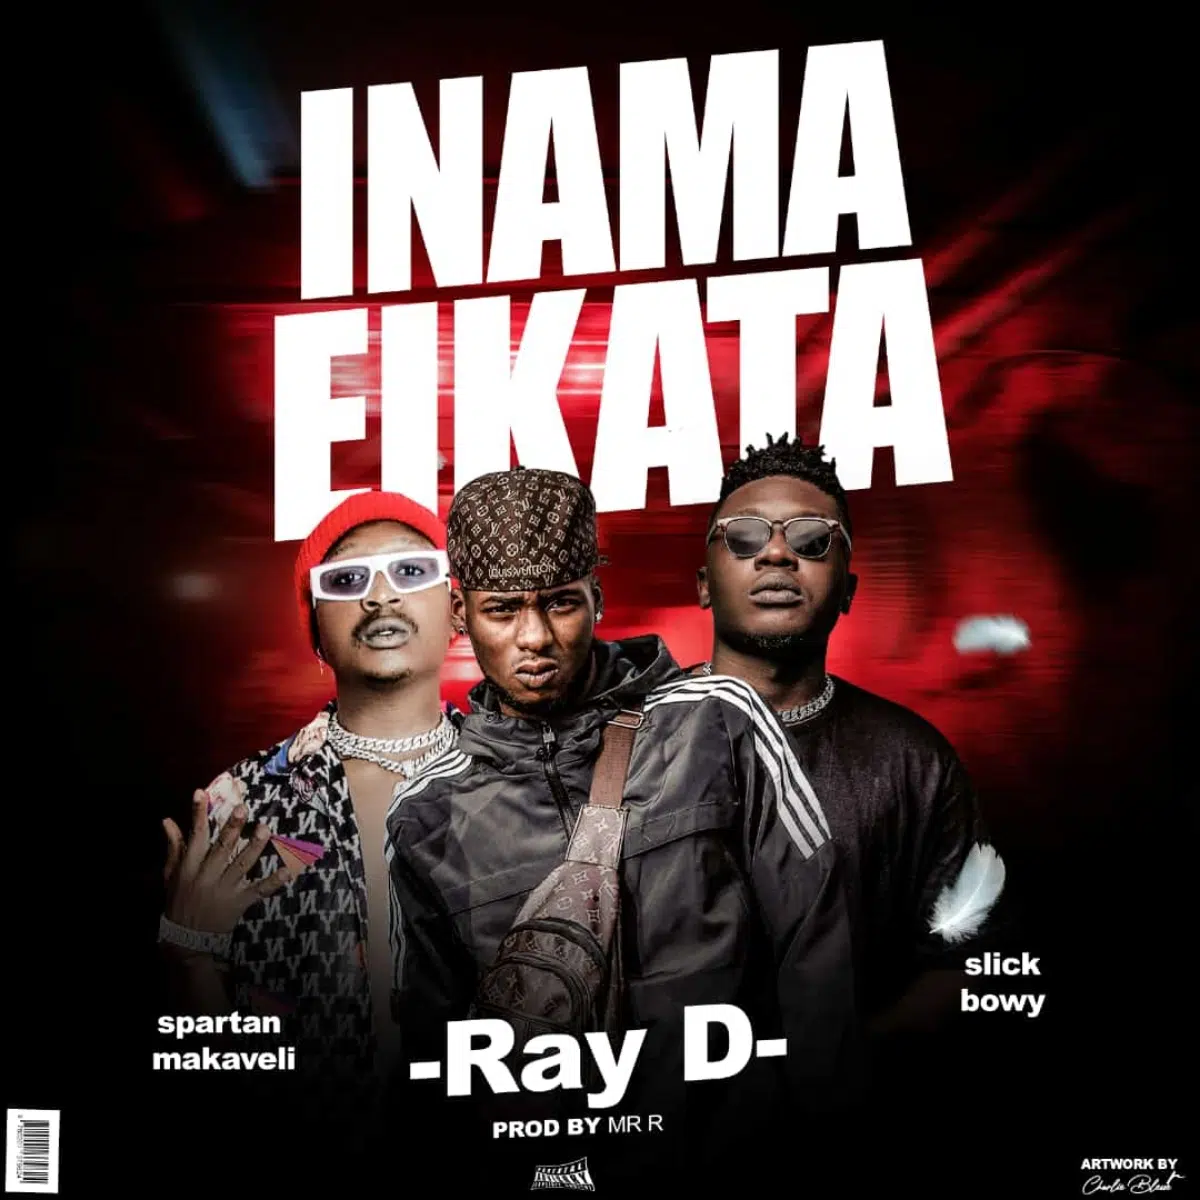 DOWNLOAD: Ray Dee Feat Spartan Makaveli & Slick Bwoy – “Inama Eikata” Mp3